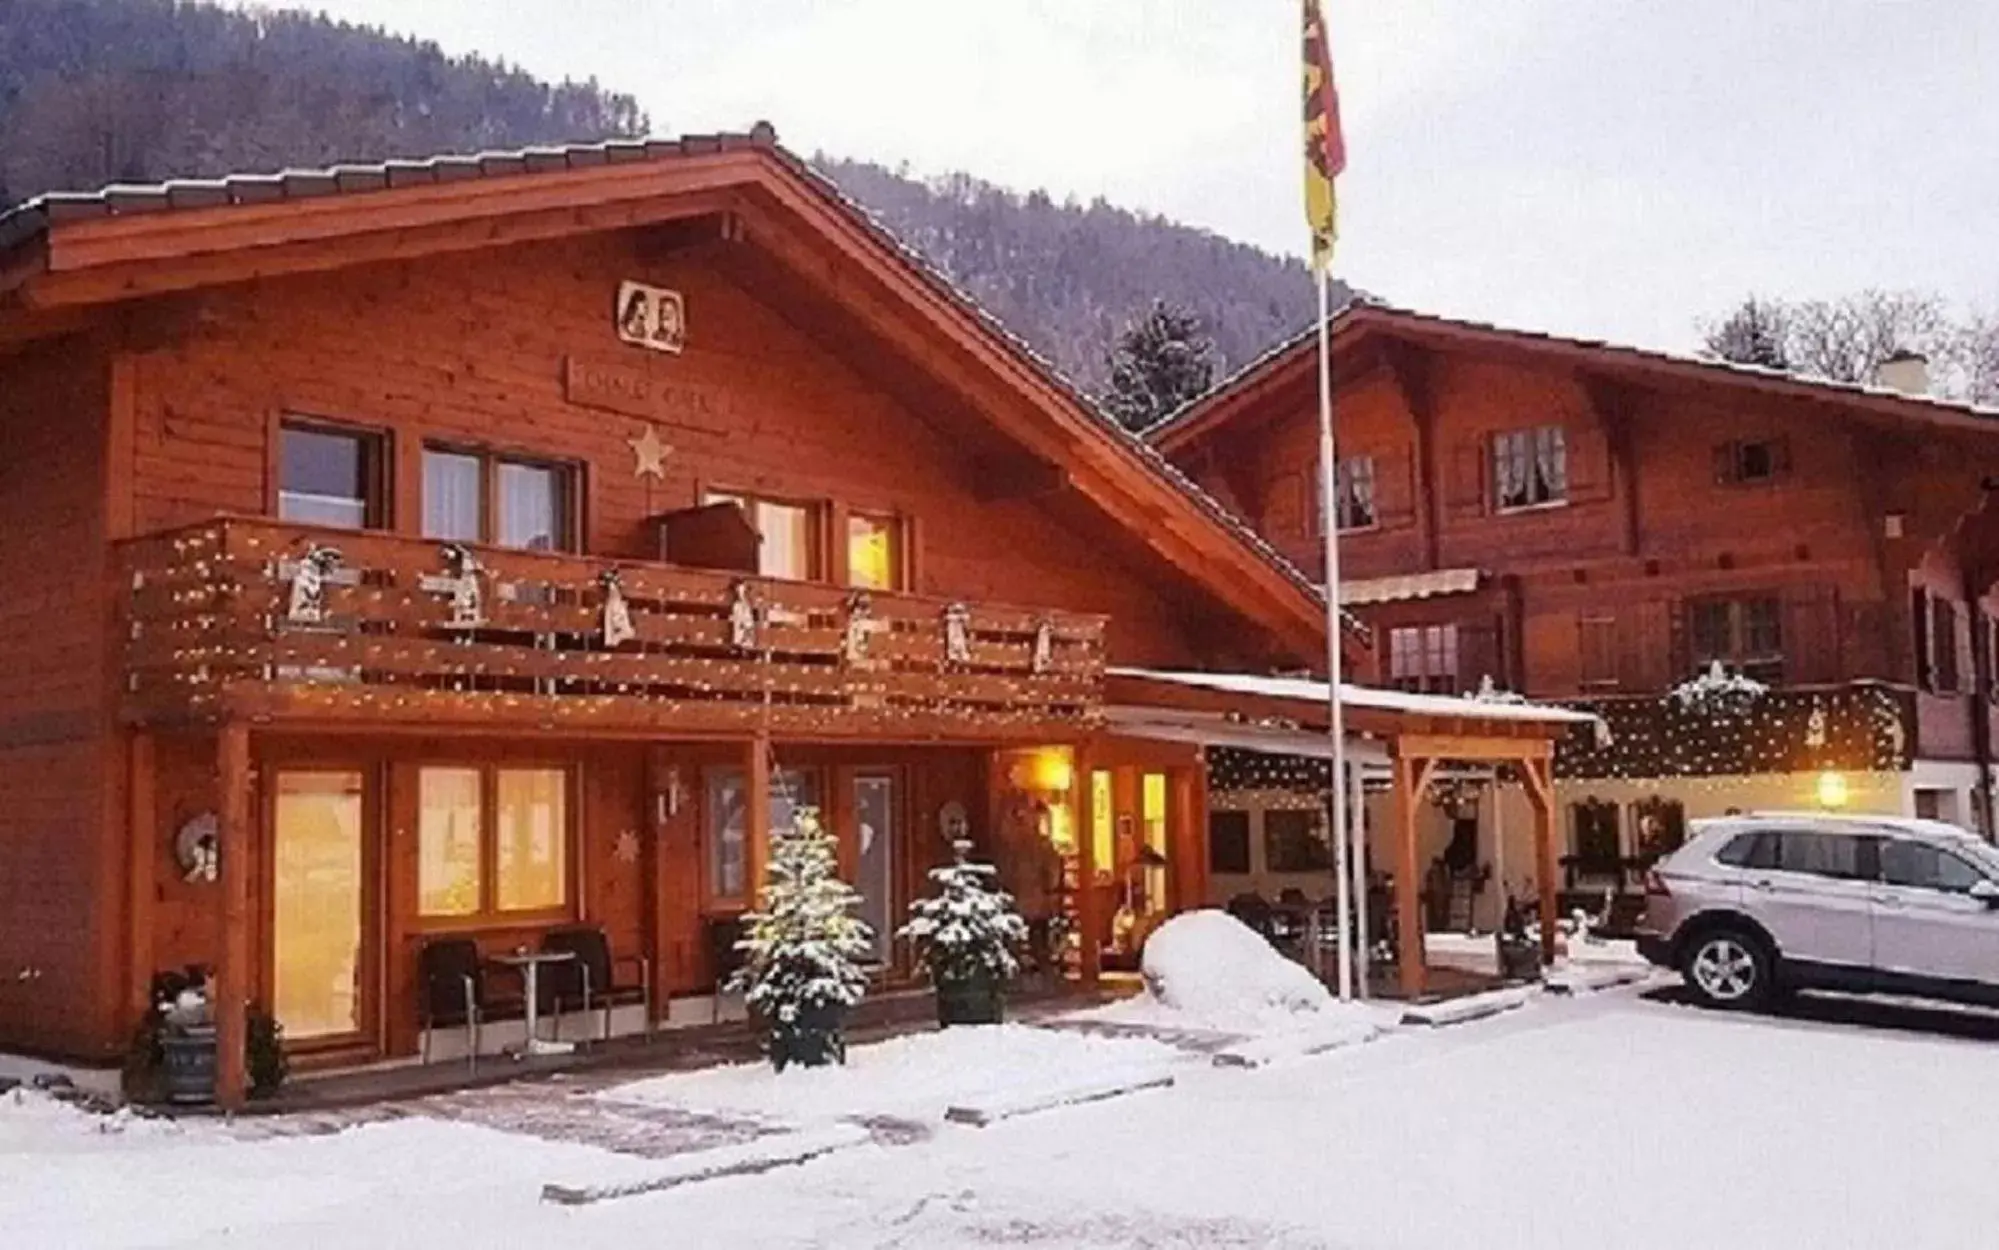 Property building, Winter in Chalet-Gafri - BnB - Frühstückspension - Service wie im Hotel